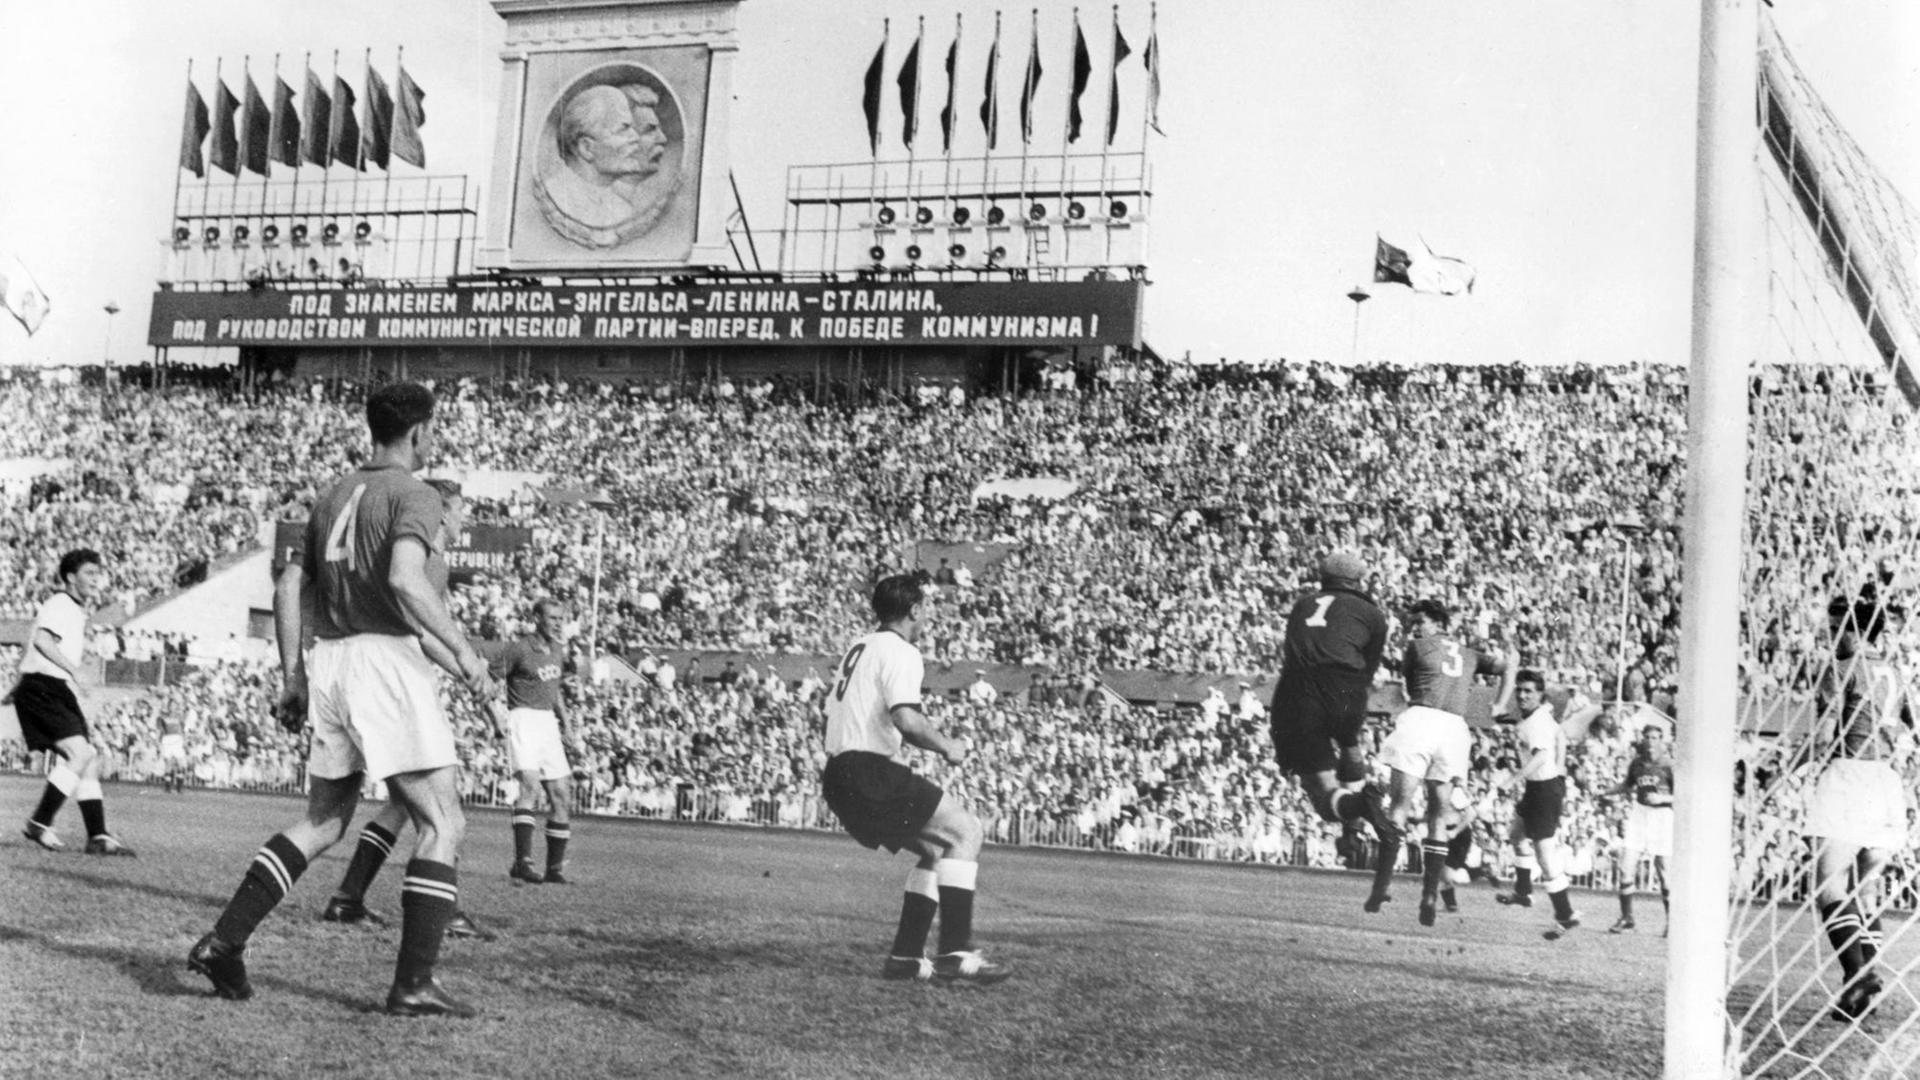 Länderspiel zwischen der UdSSR und der DFB-Auswahl im August 1955.